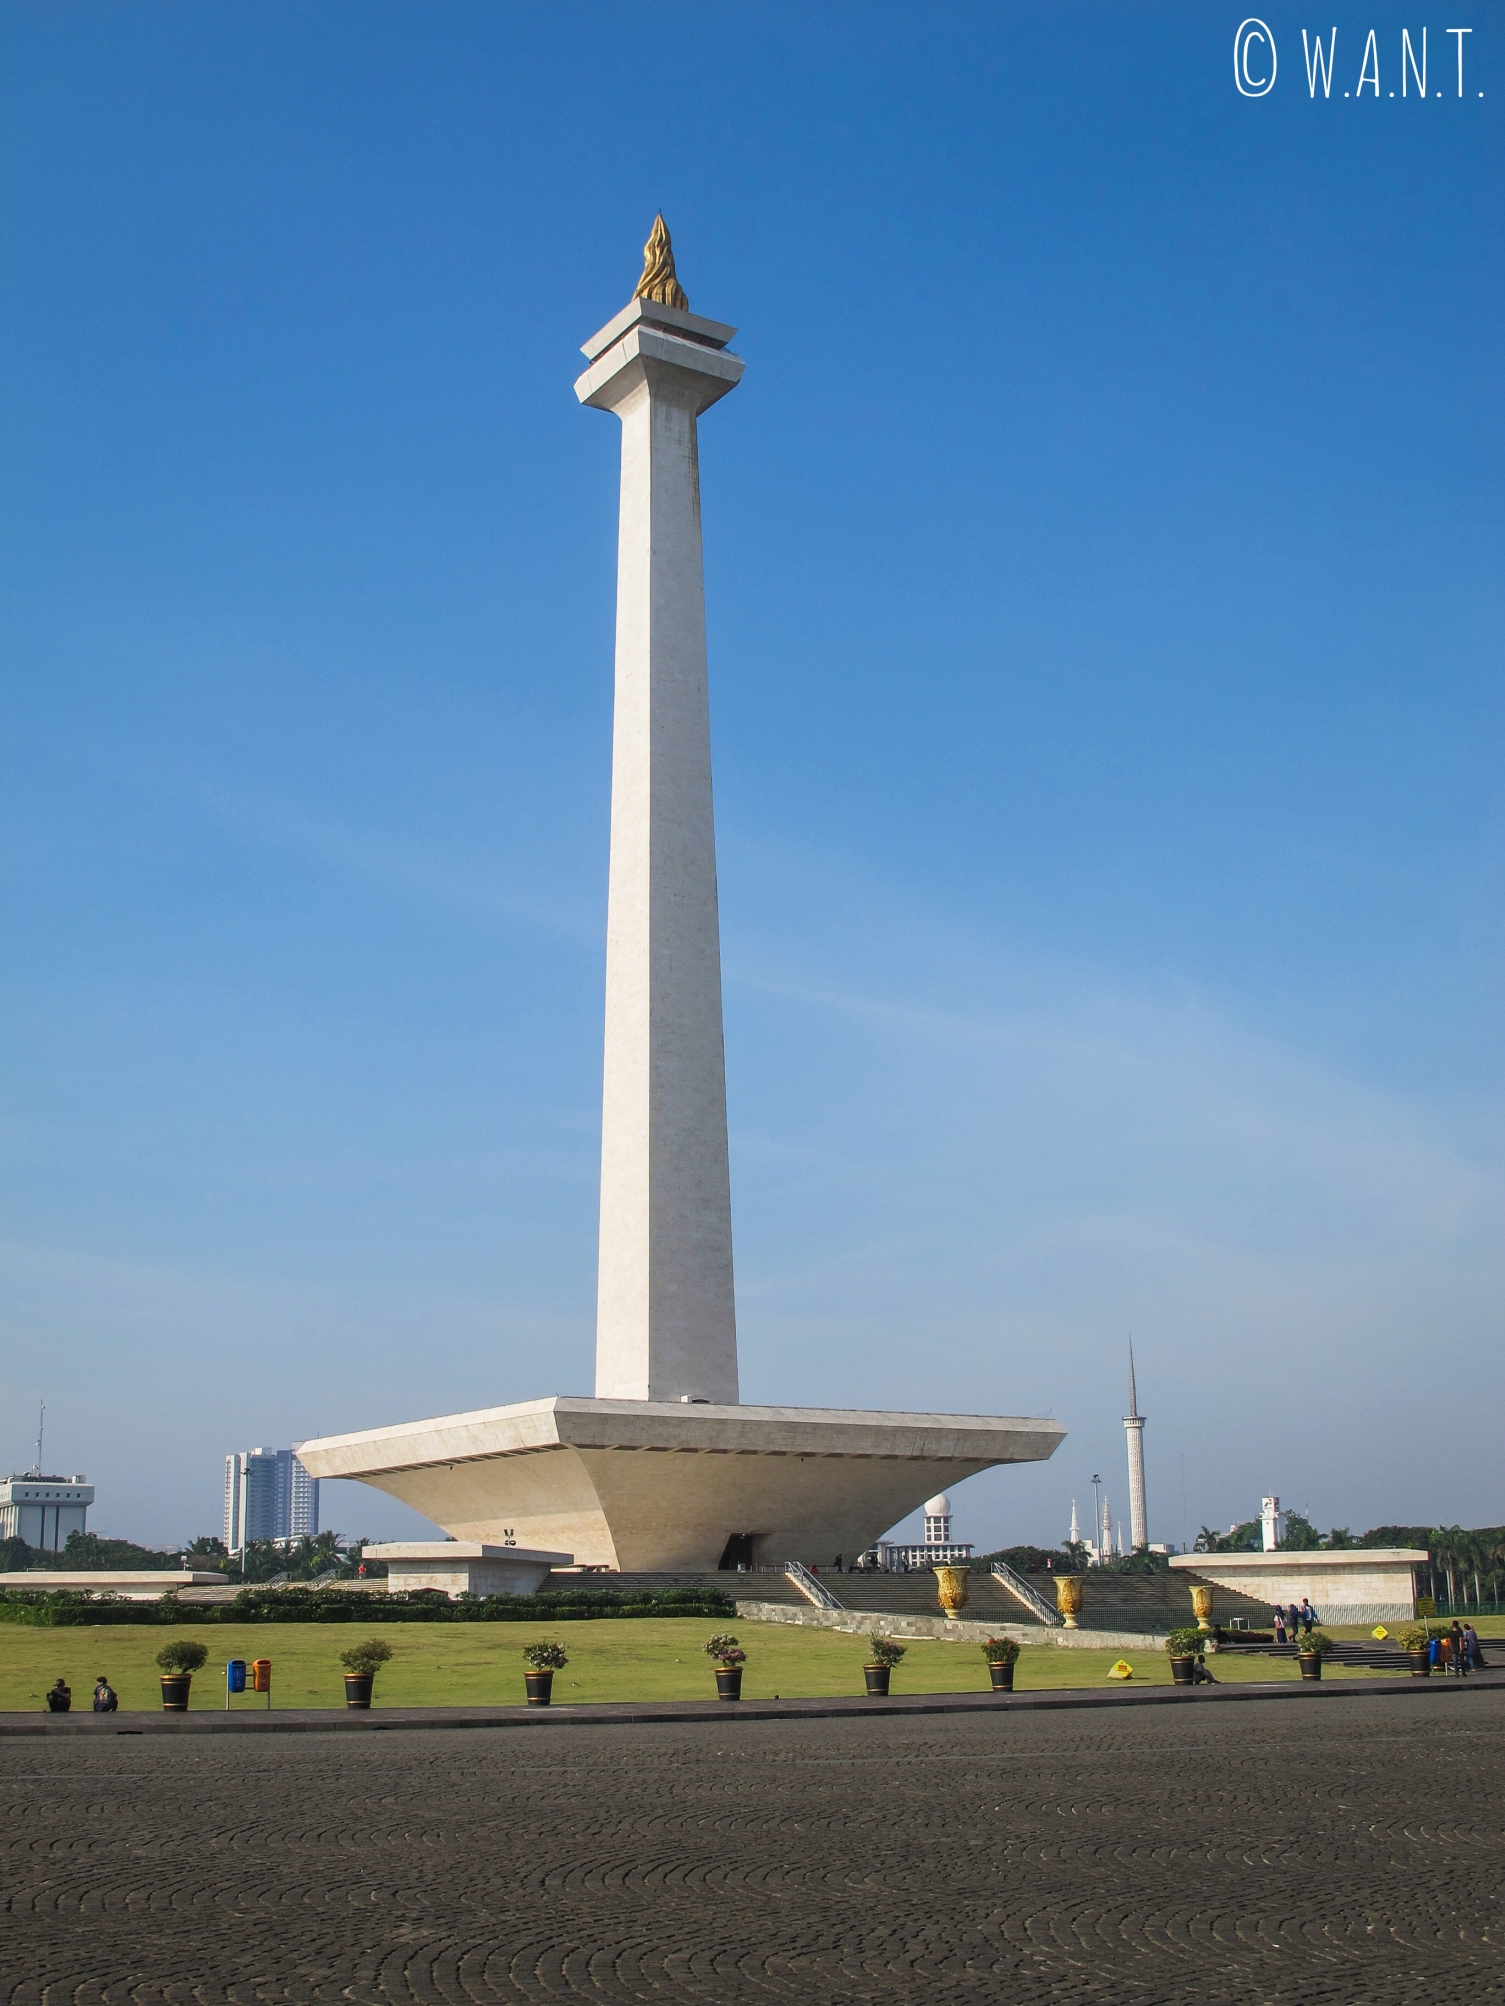 Le Monas est situé sur la place Merdeka à Jakarta